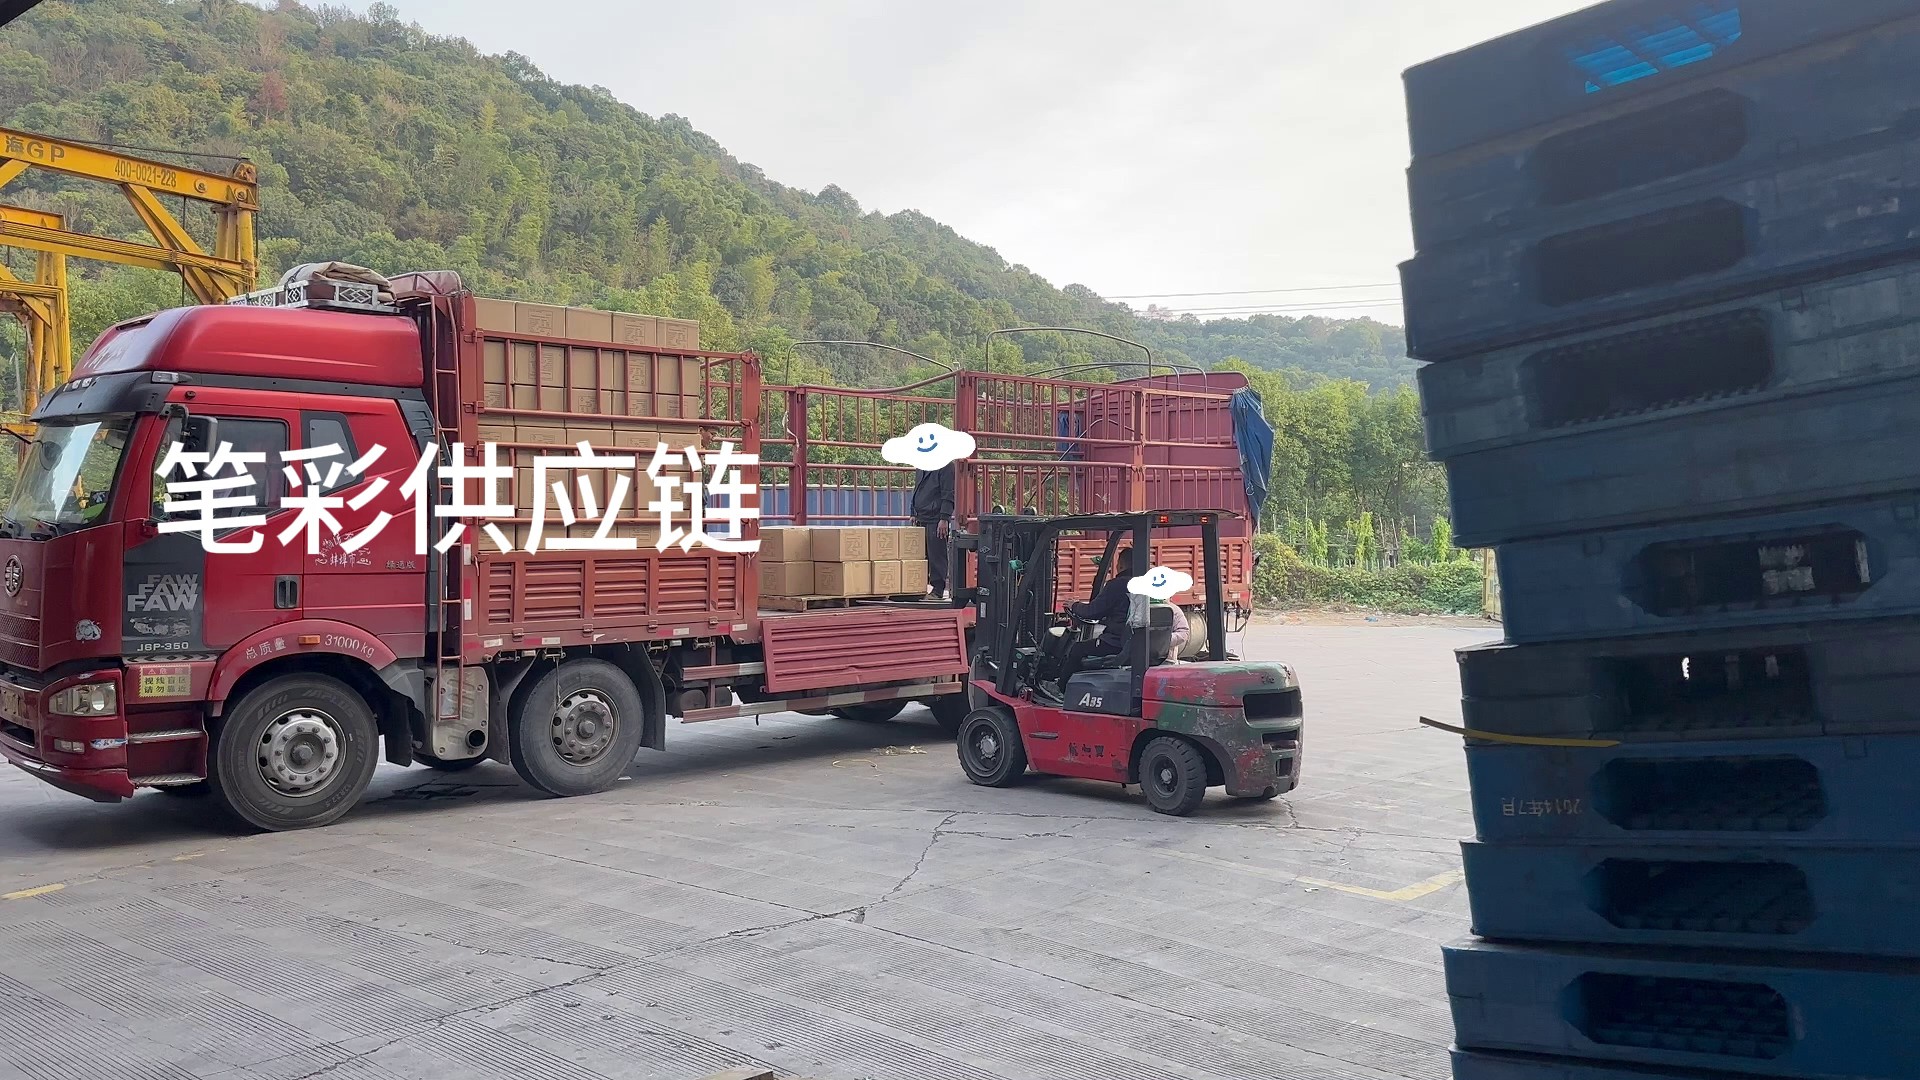 宁波集装箱拖车车队,集装箱拖车